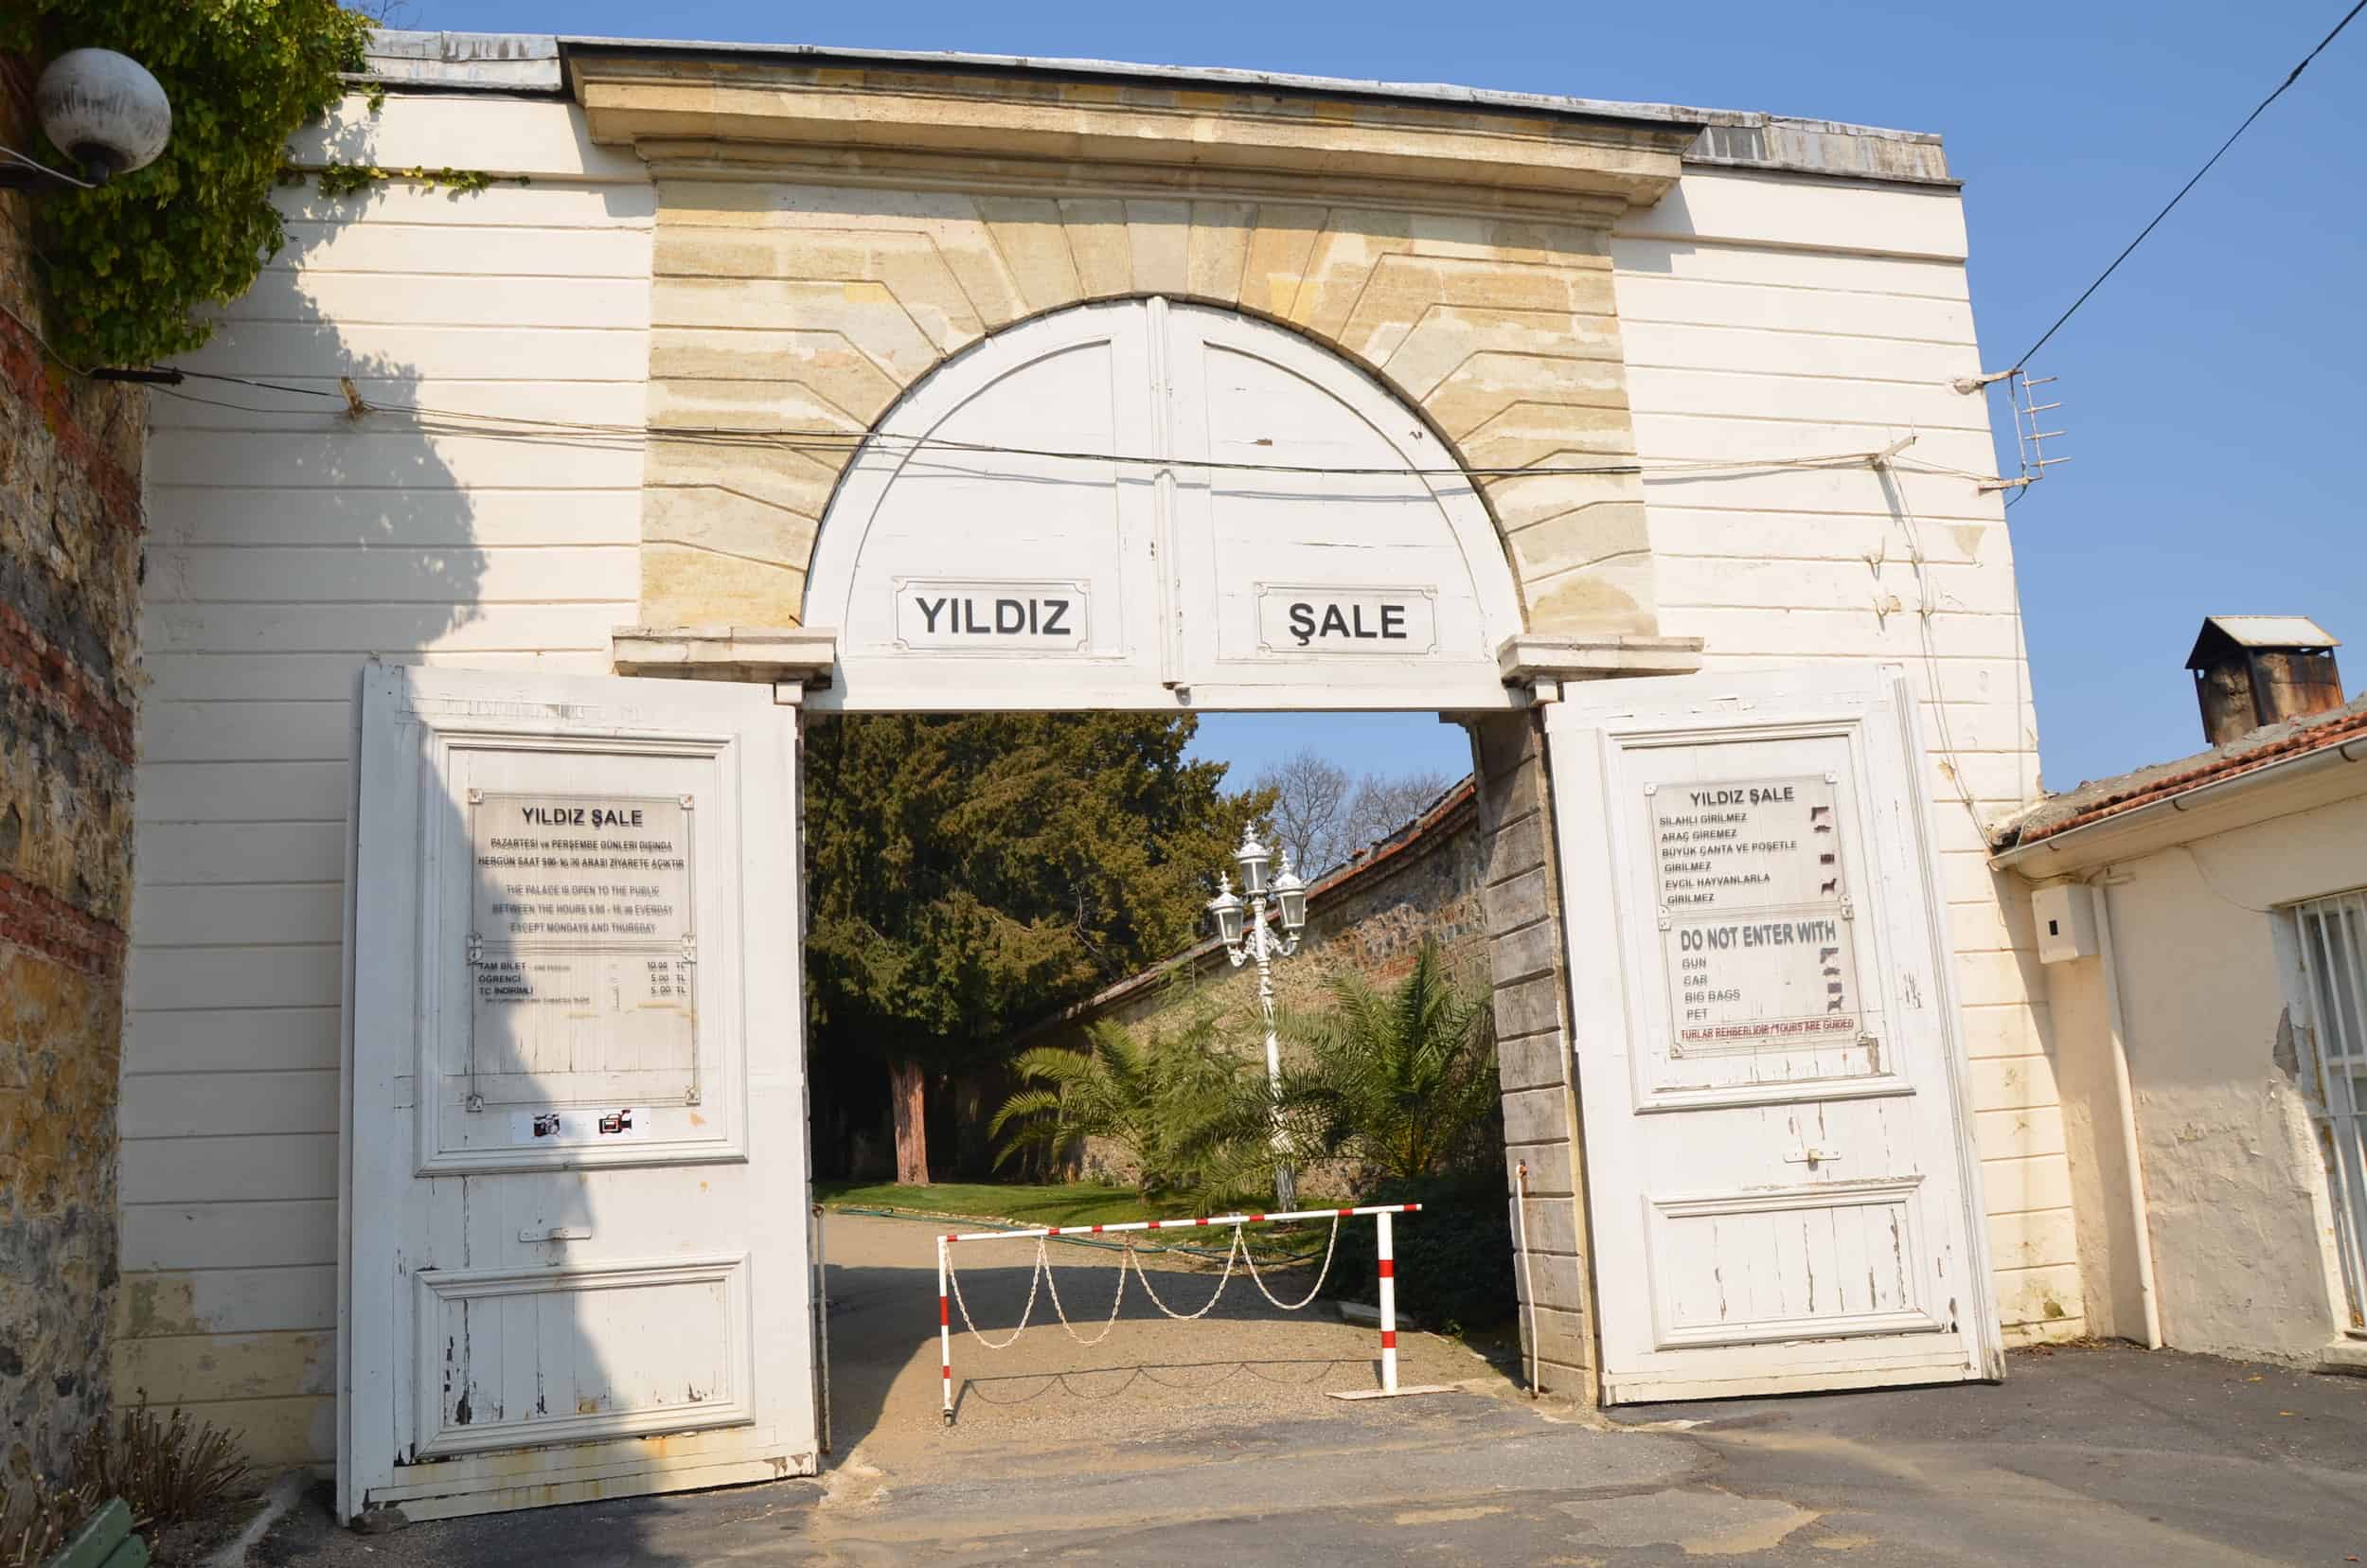 Gate to Yıldız Chalet at Yıldız Palace in Istanbul, Turkey